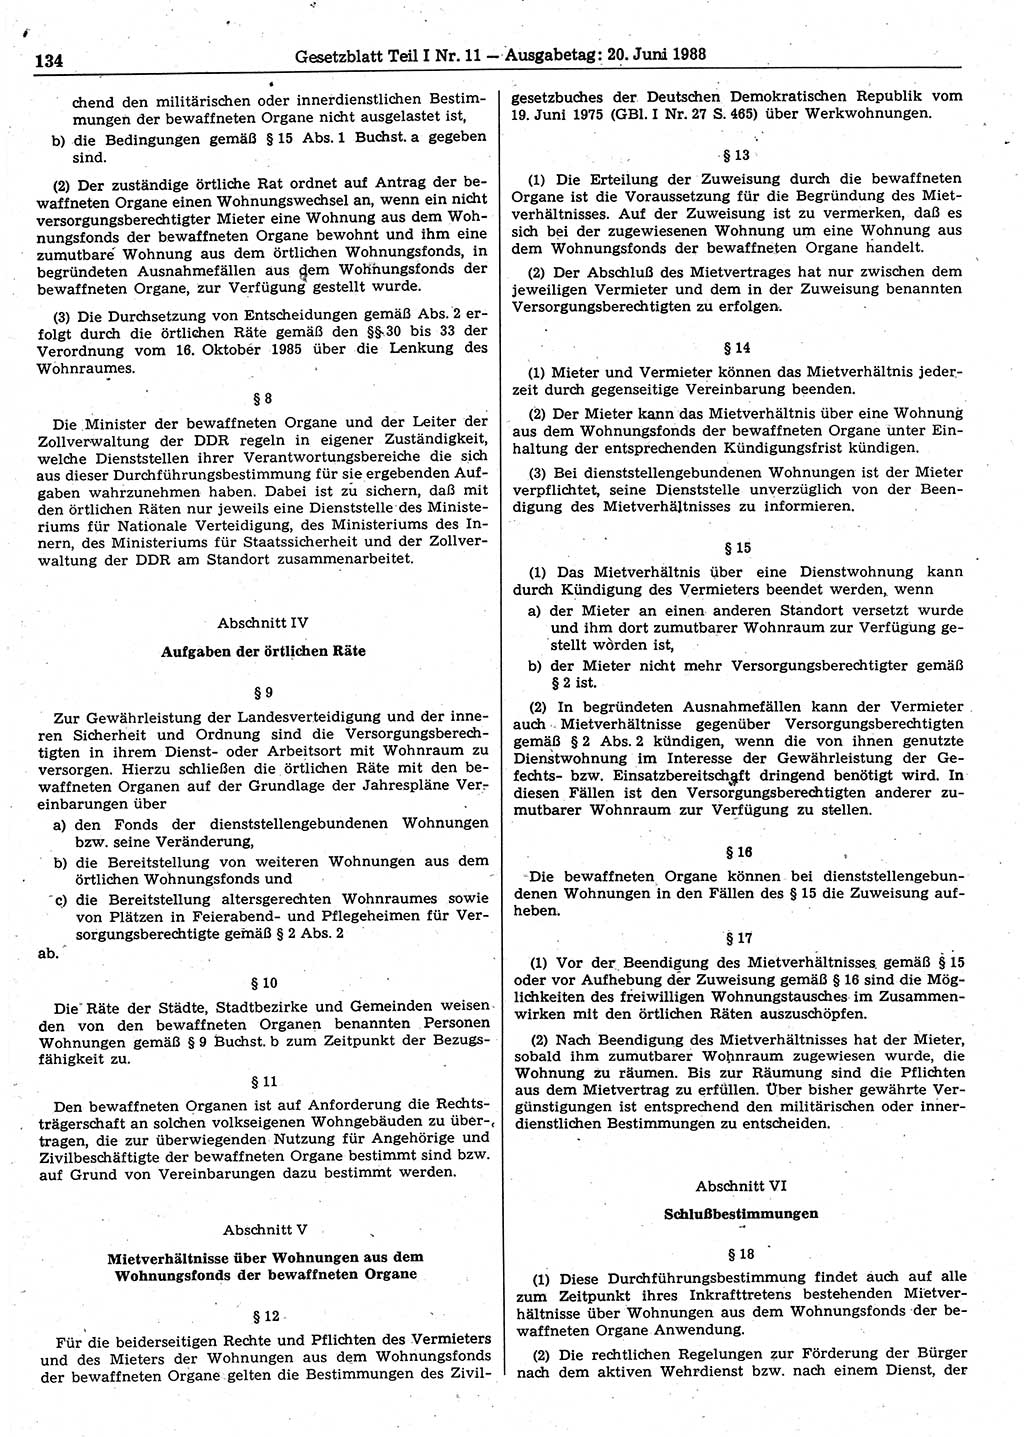 Gesetzblatt (GBl.) der Deutschen Demokratischen Republik (DDR) Teil Ⅰ 1988, Seite 134 (GBl. DDR Ⅰ 1988, S. 134)